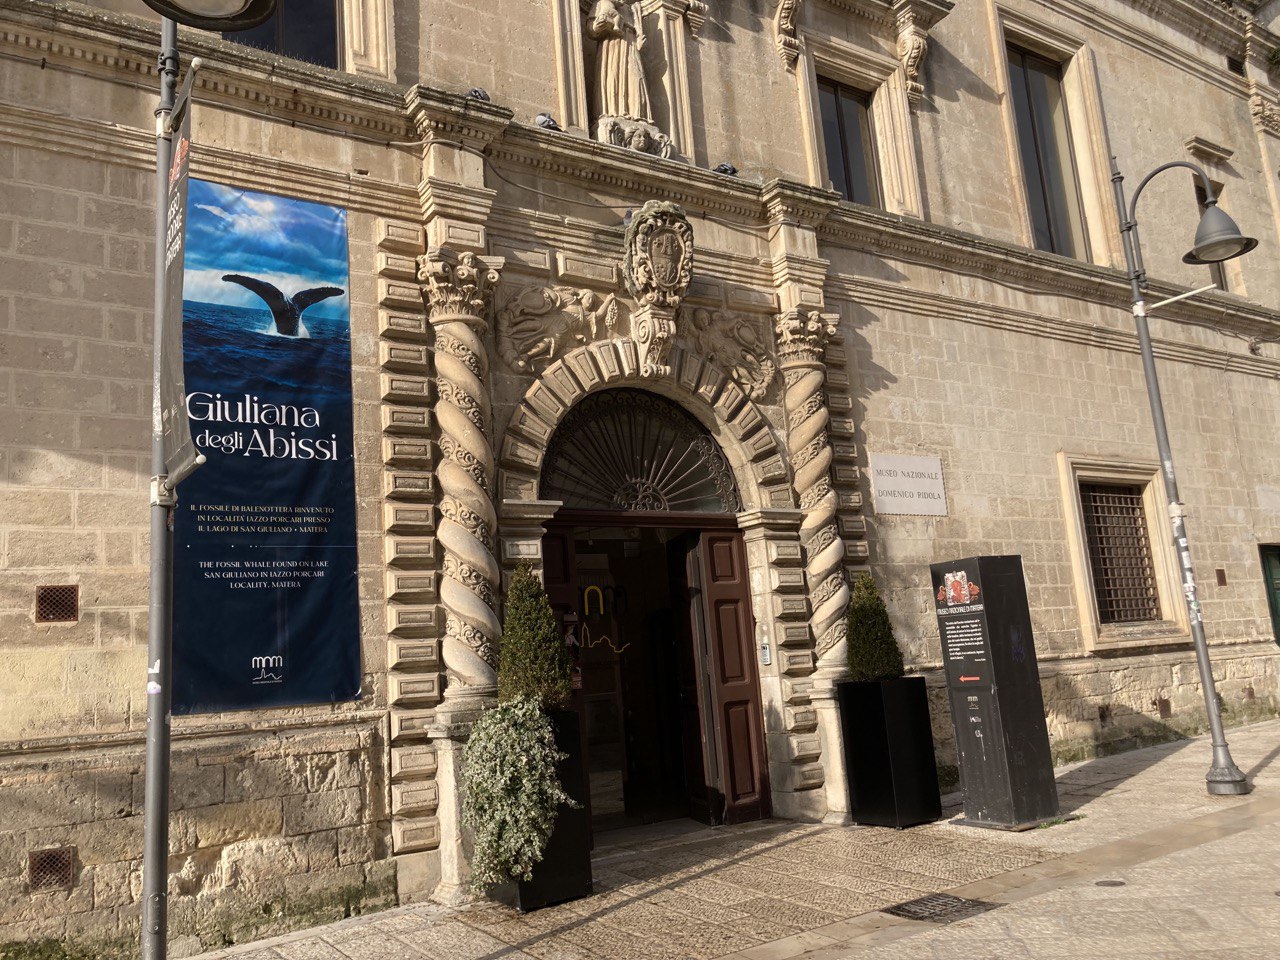 Proroga aumento costo biglietto di 1 euro fino al 15 dicembre per  fronteggiare l'emergenza alluvionale - Museo nazionale di Matera